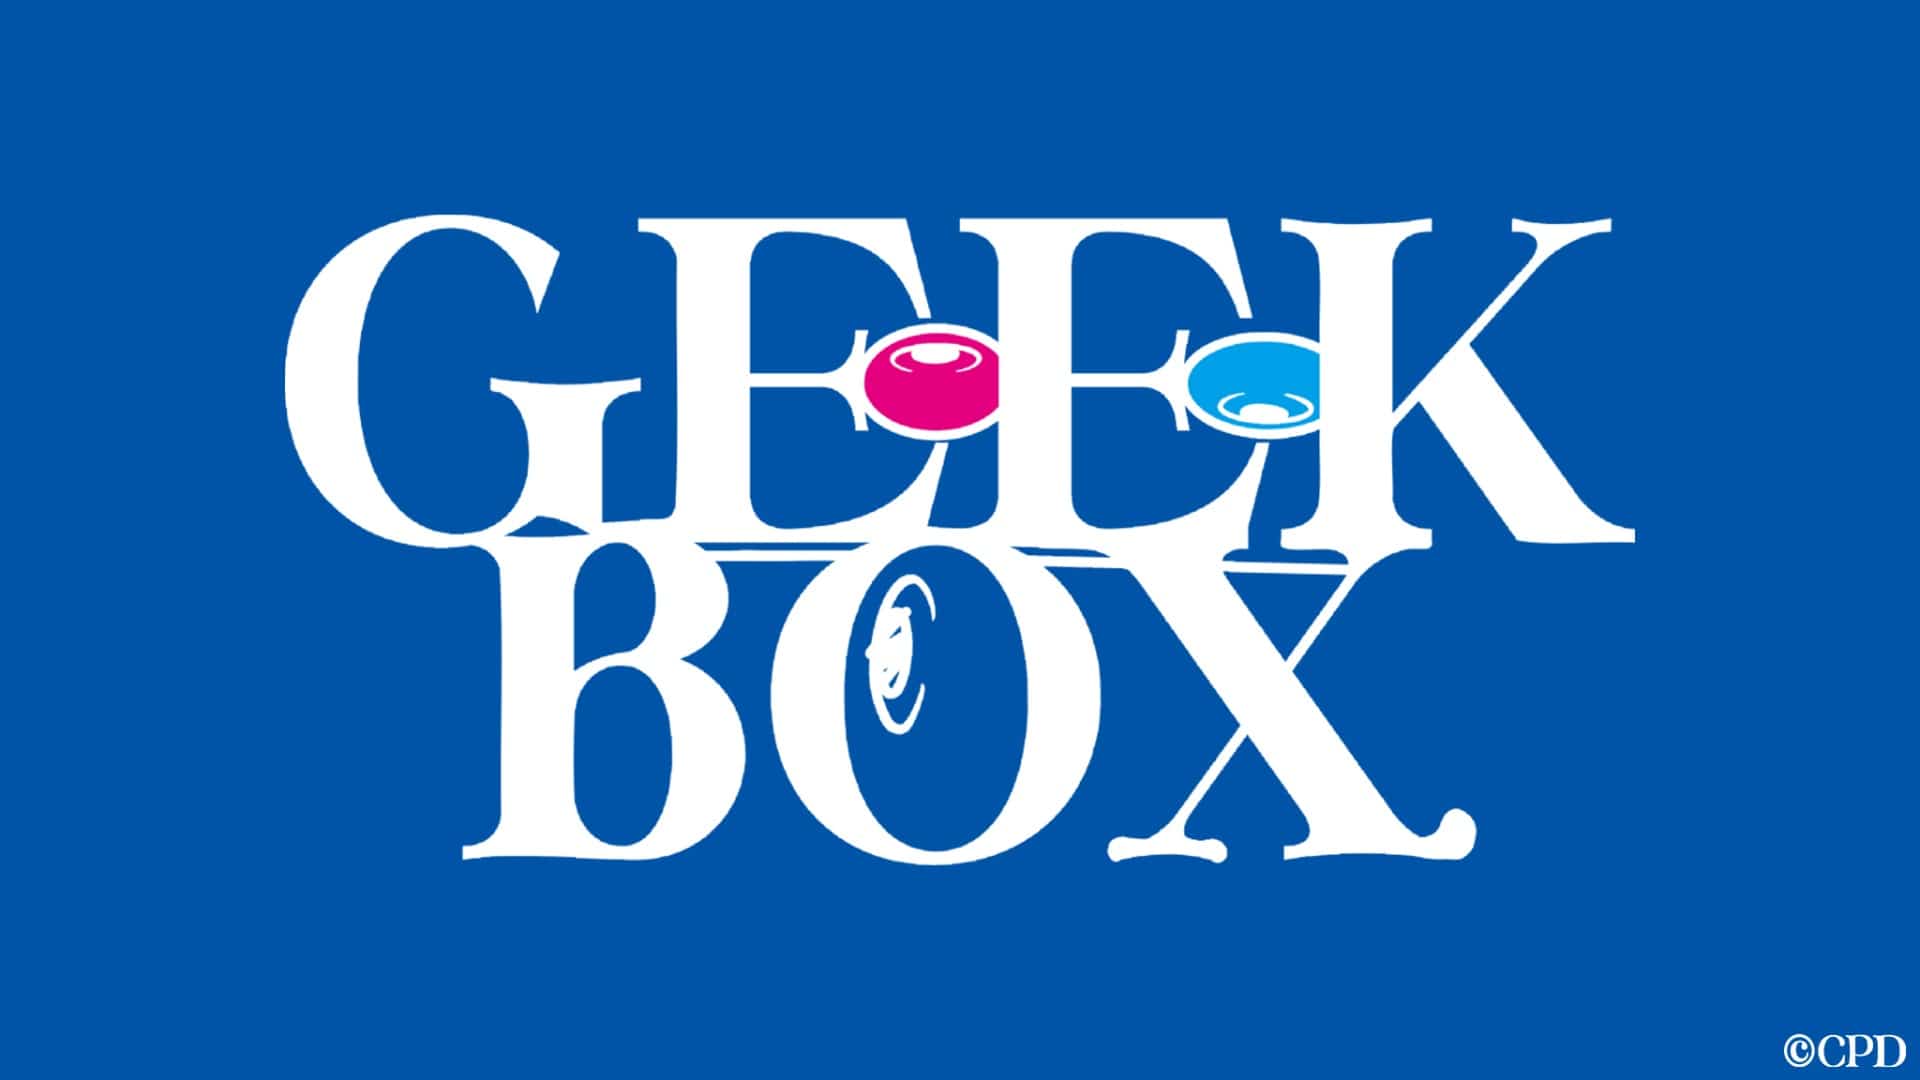 geek box